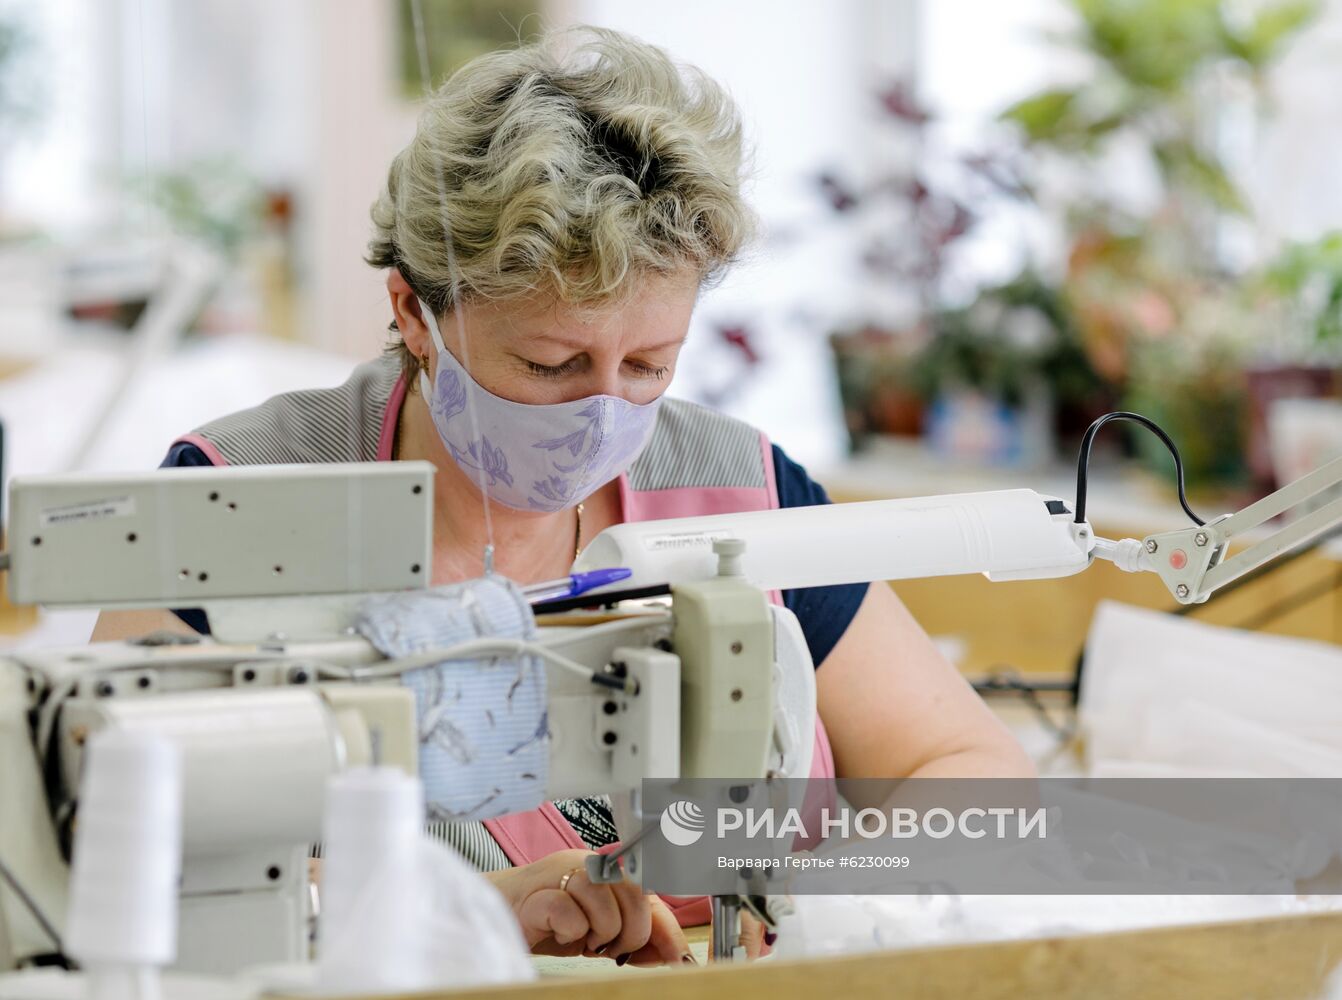 Производство защитных костюмов, масок и бахил в Иванове